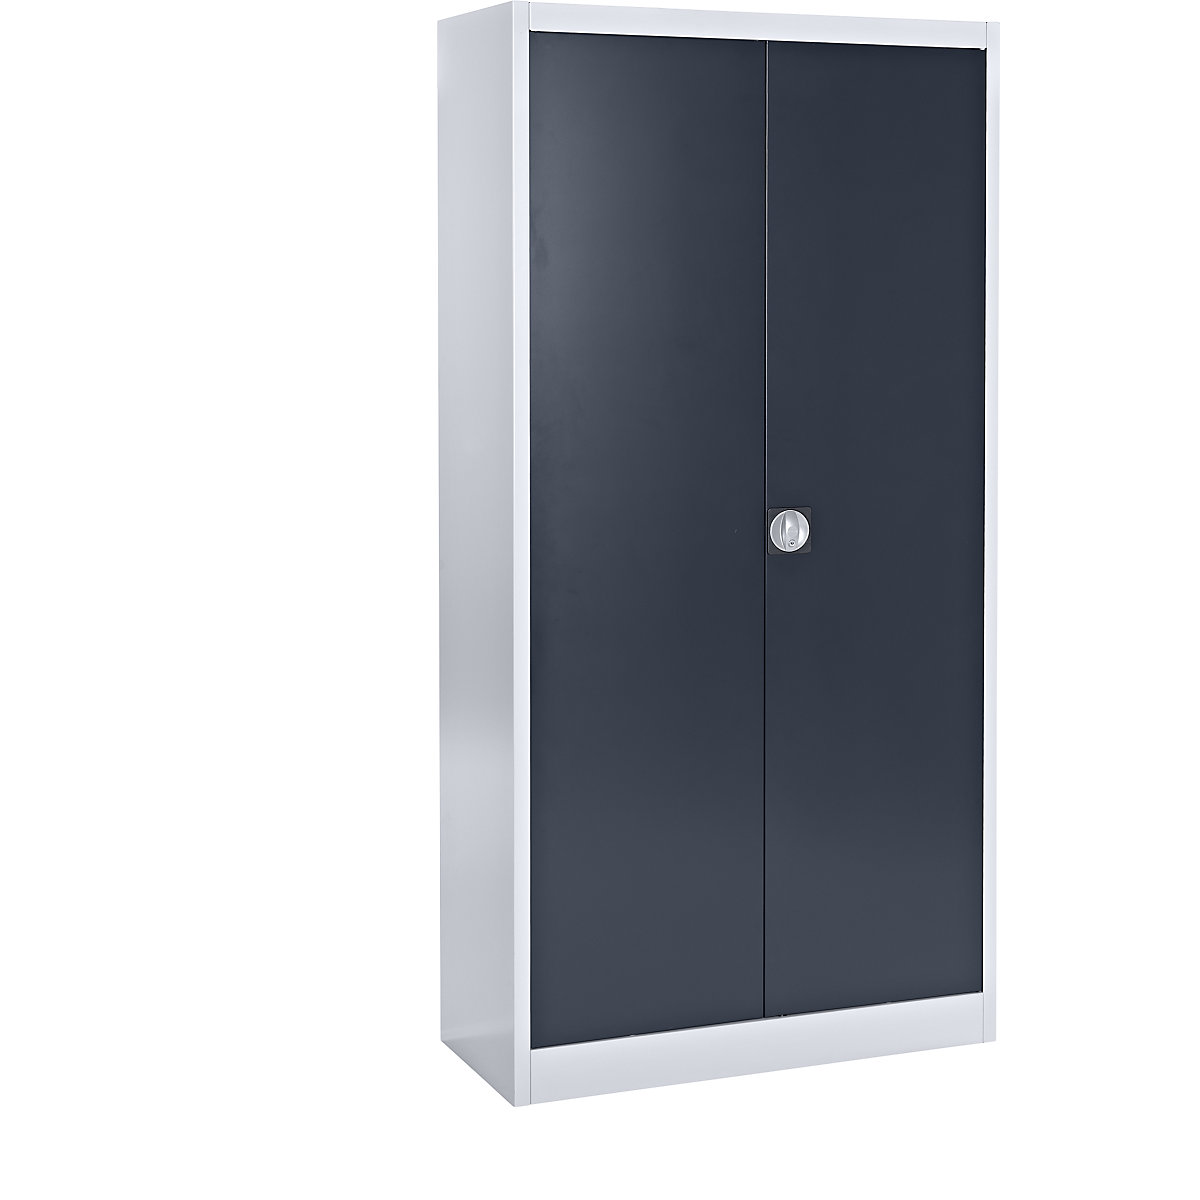 Jeklena omara z zgibnimi vrati – mauser, 4 police, globina 420 mm, belo aluminijast / antracitno siv-7